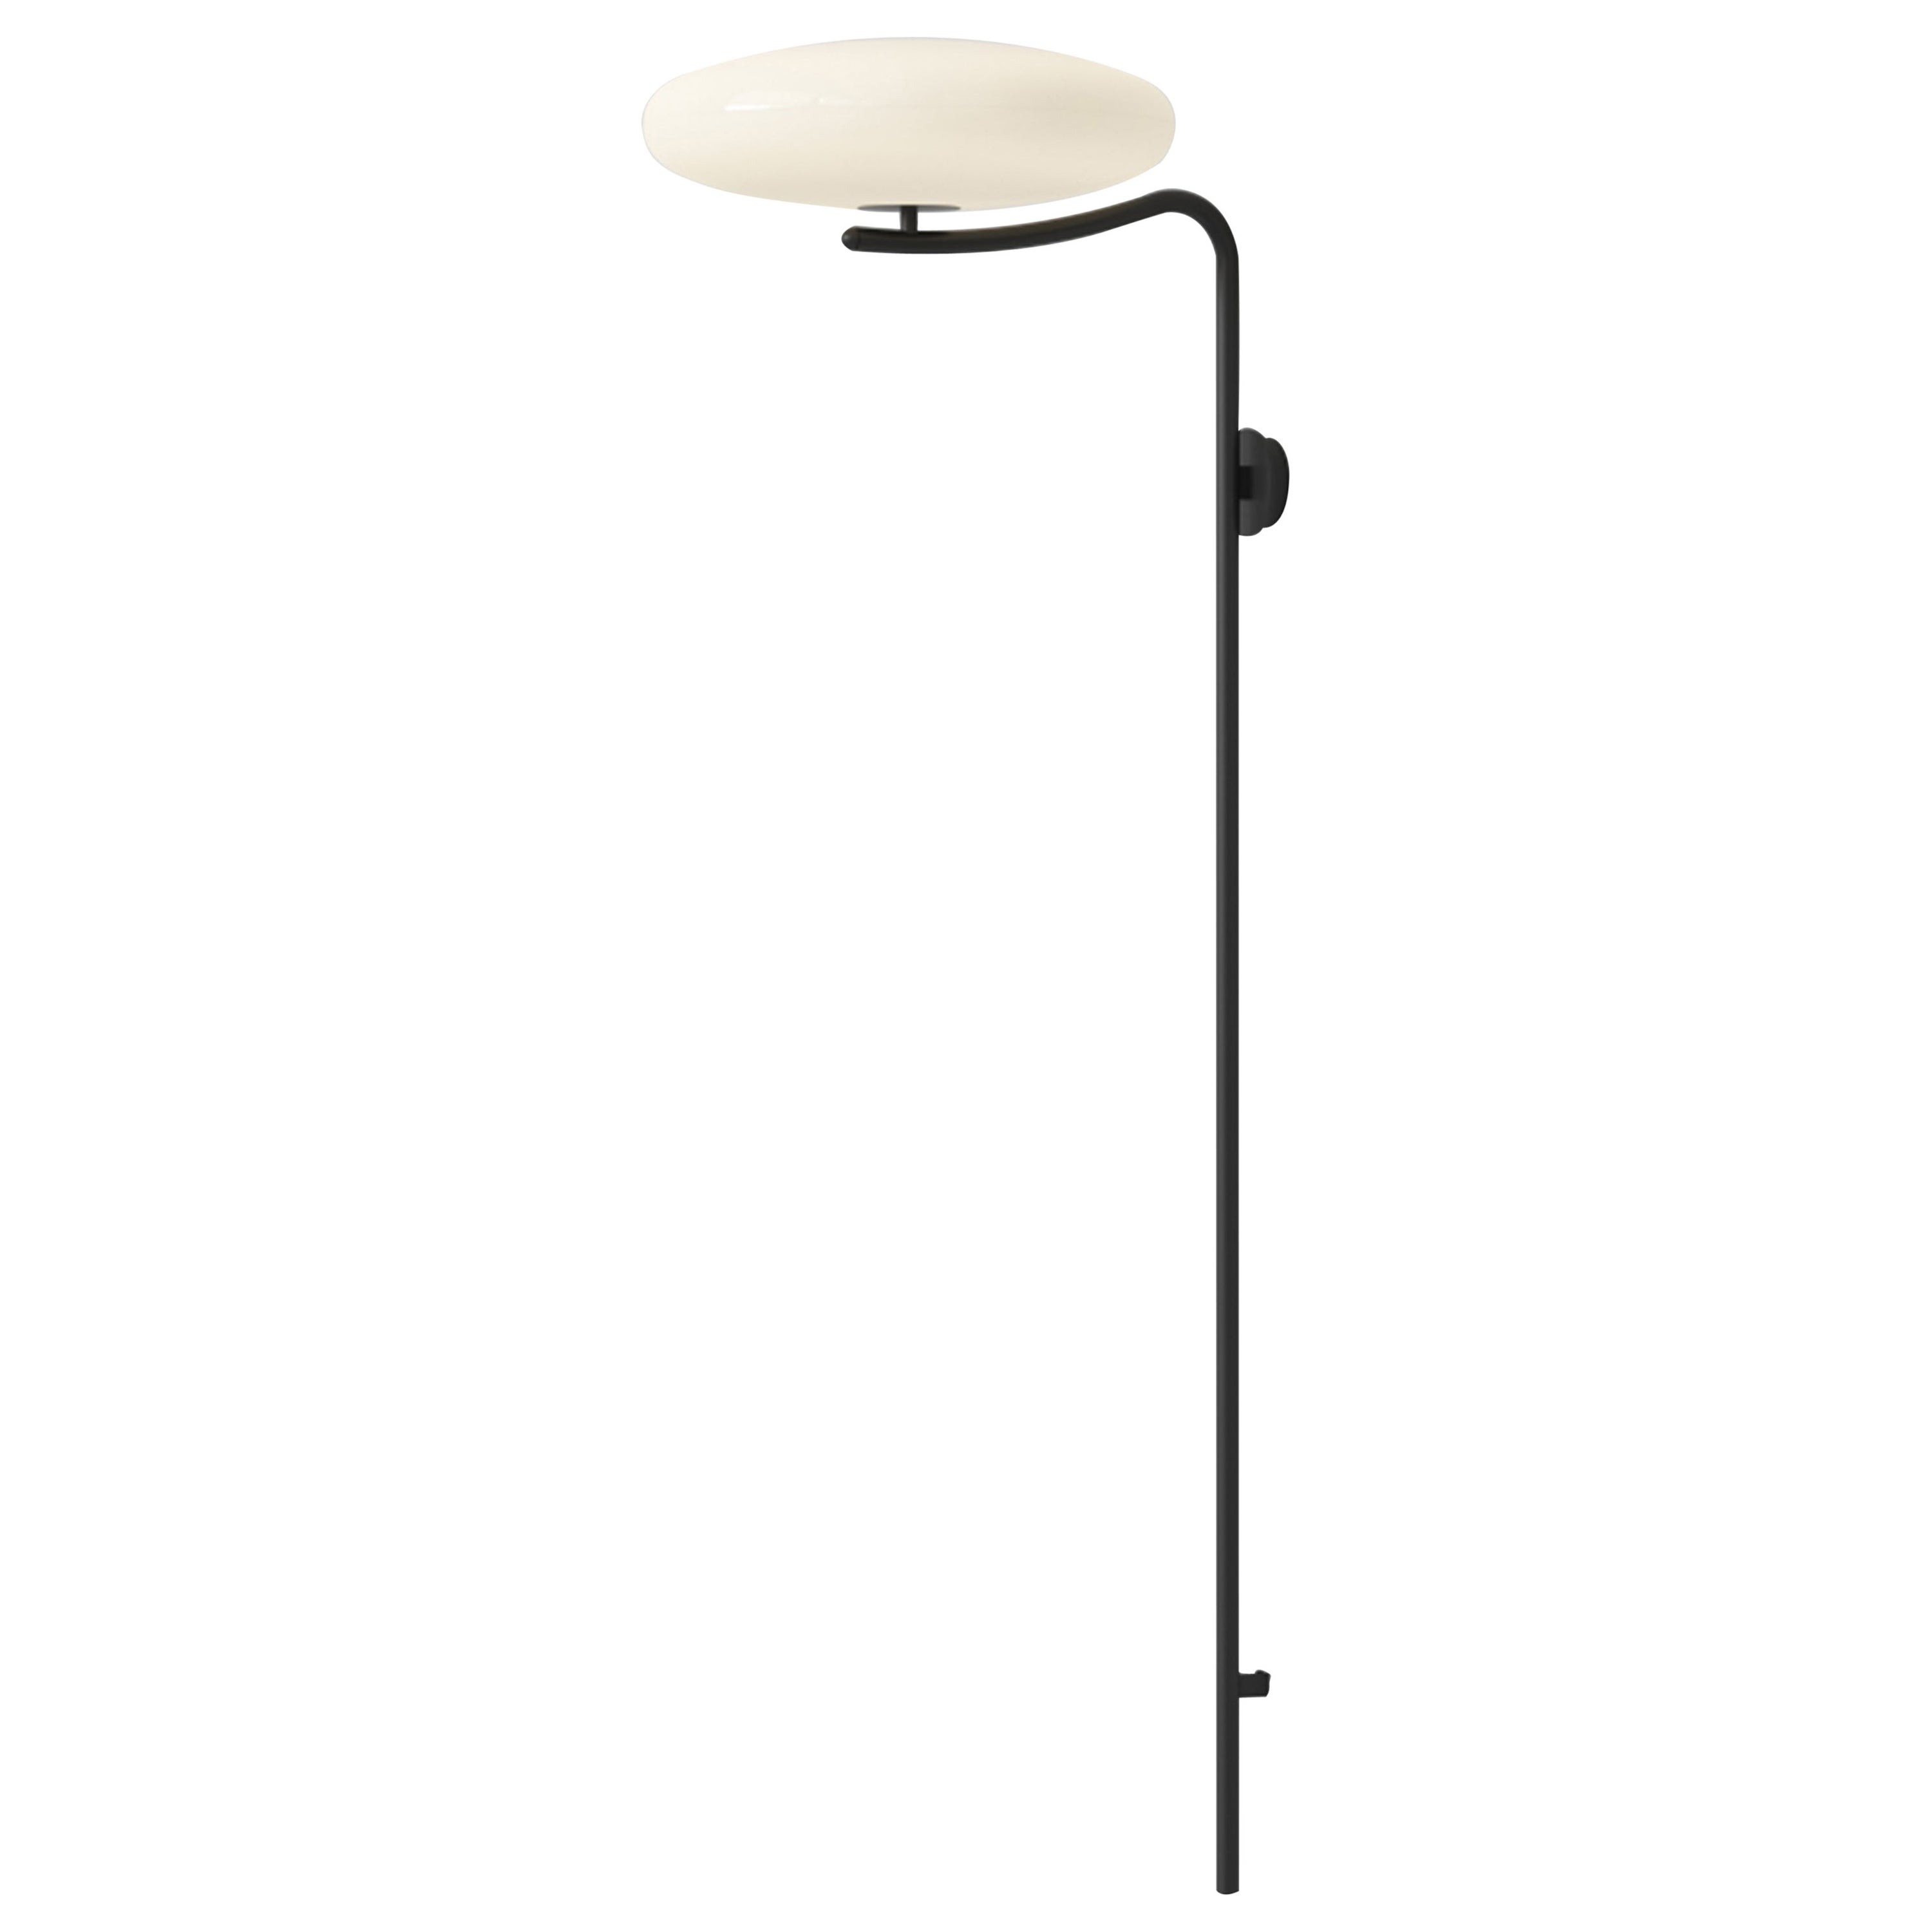 Gino Sarfatti Wall Lamp Model 2065 White Diffuser, Black Hardware For Sale